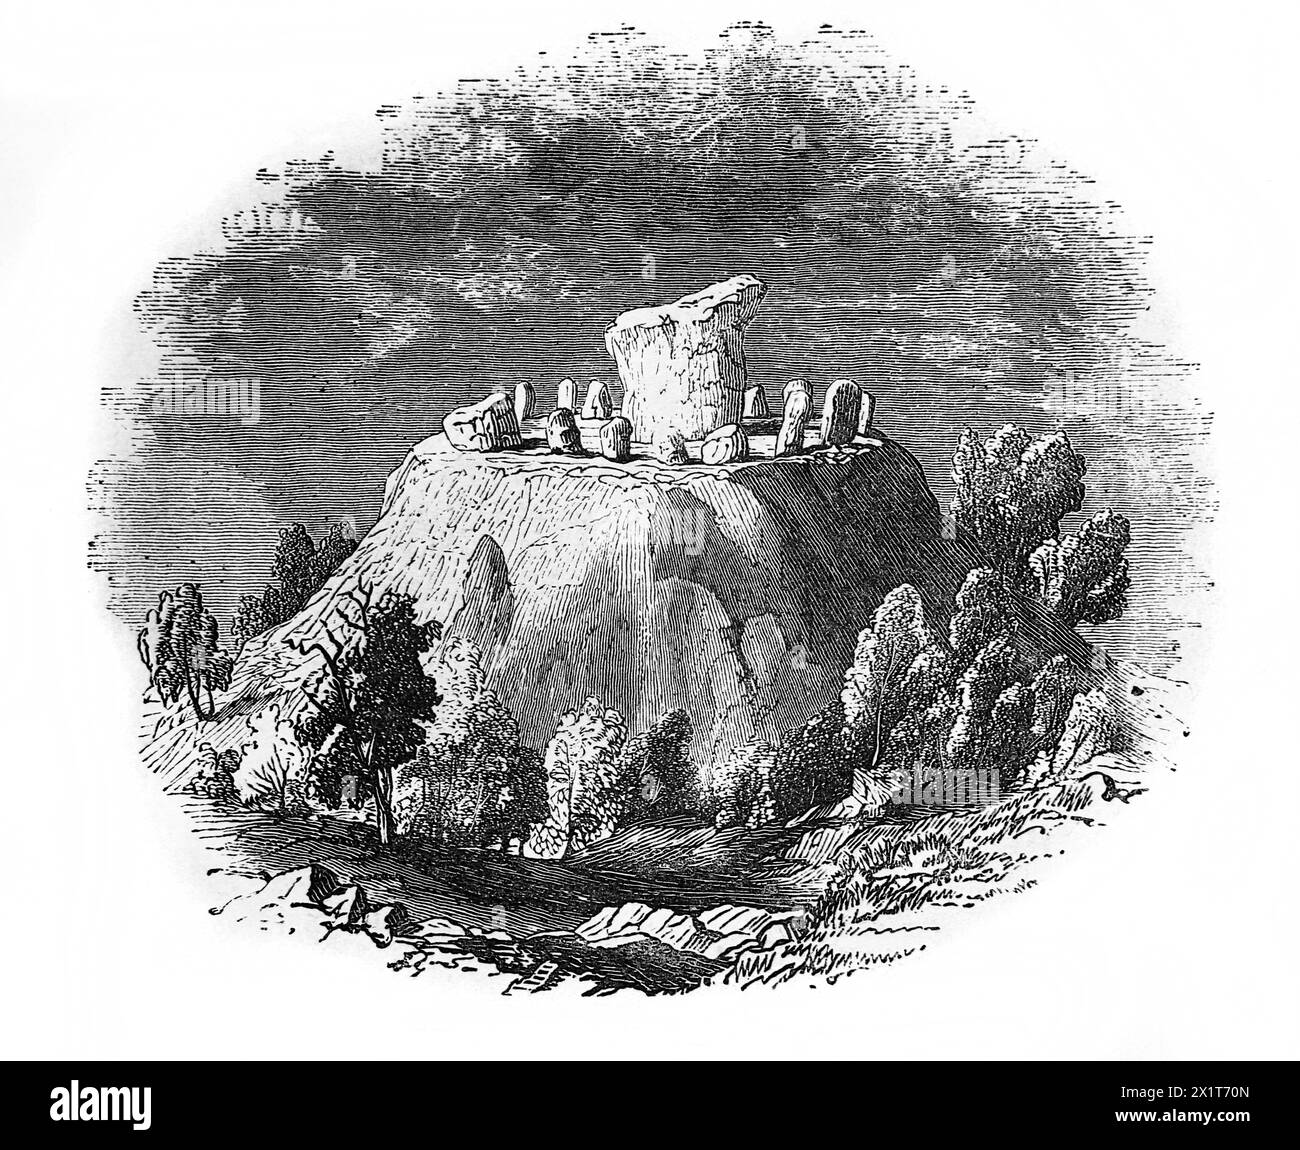 Holzgravierung des Agglestone Rock, bevor er auf seiner Seite fiel Isle of Purbeck Dorset England aus dem 19. Jahrhundert illustrierte Familienbibel Stockfoto